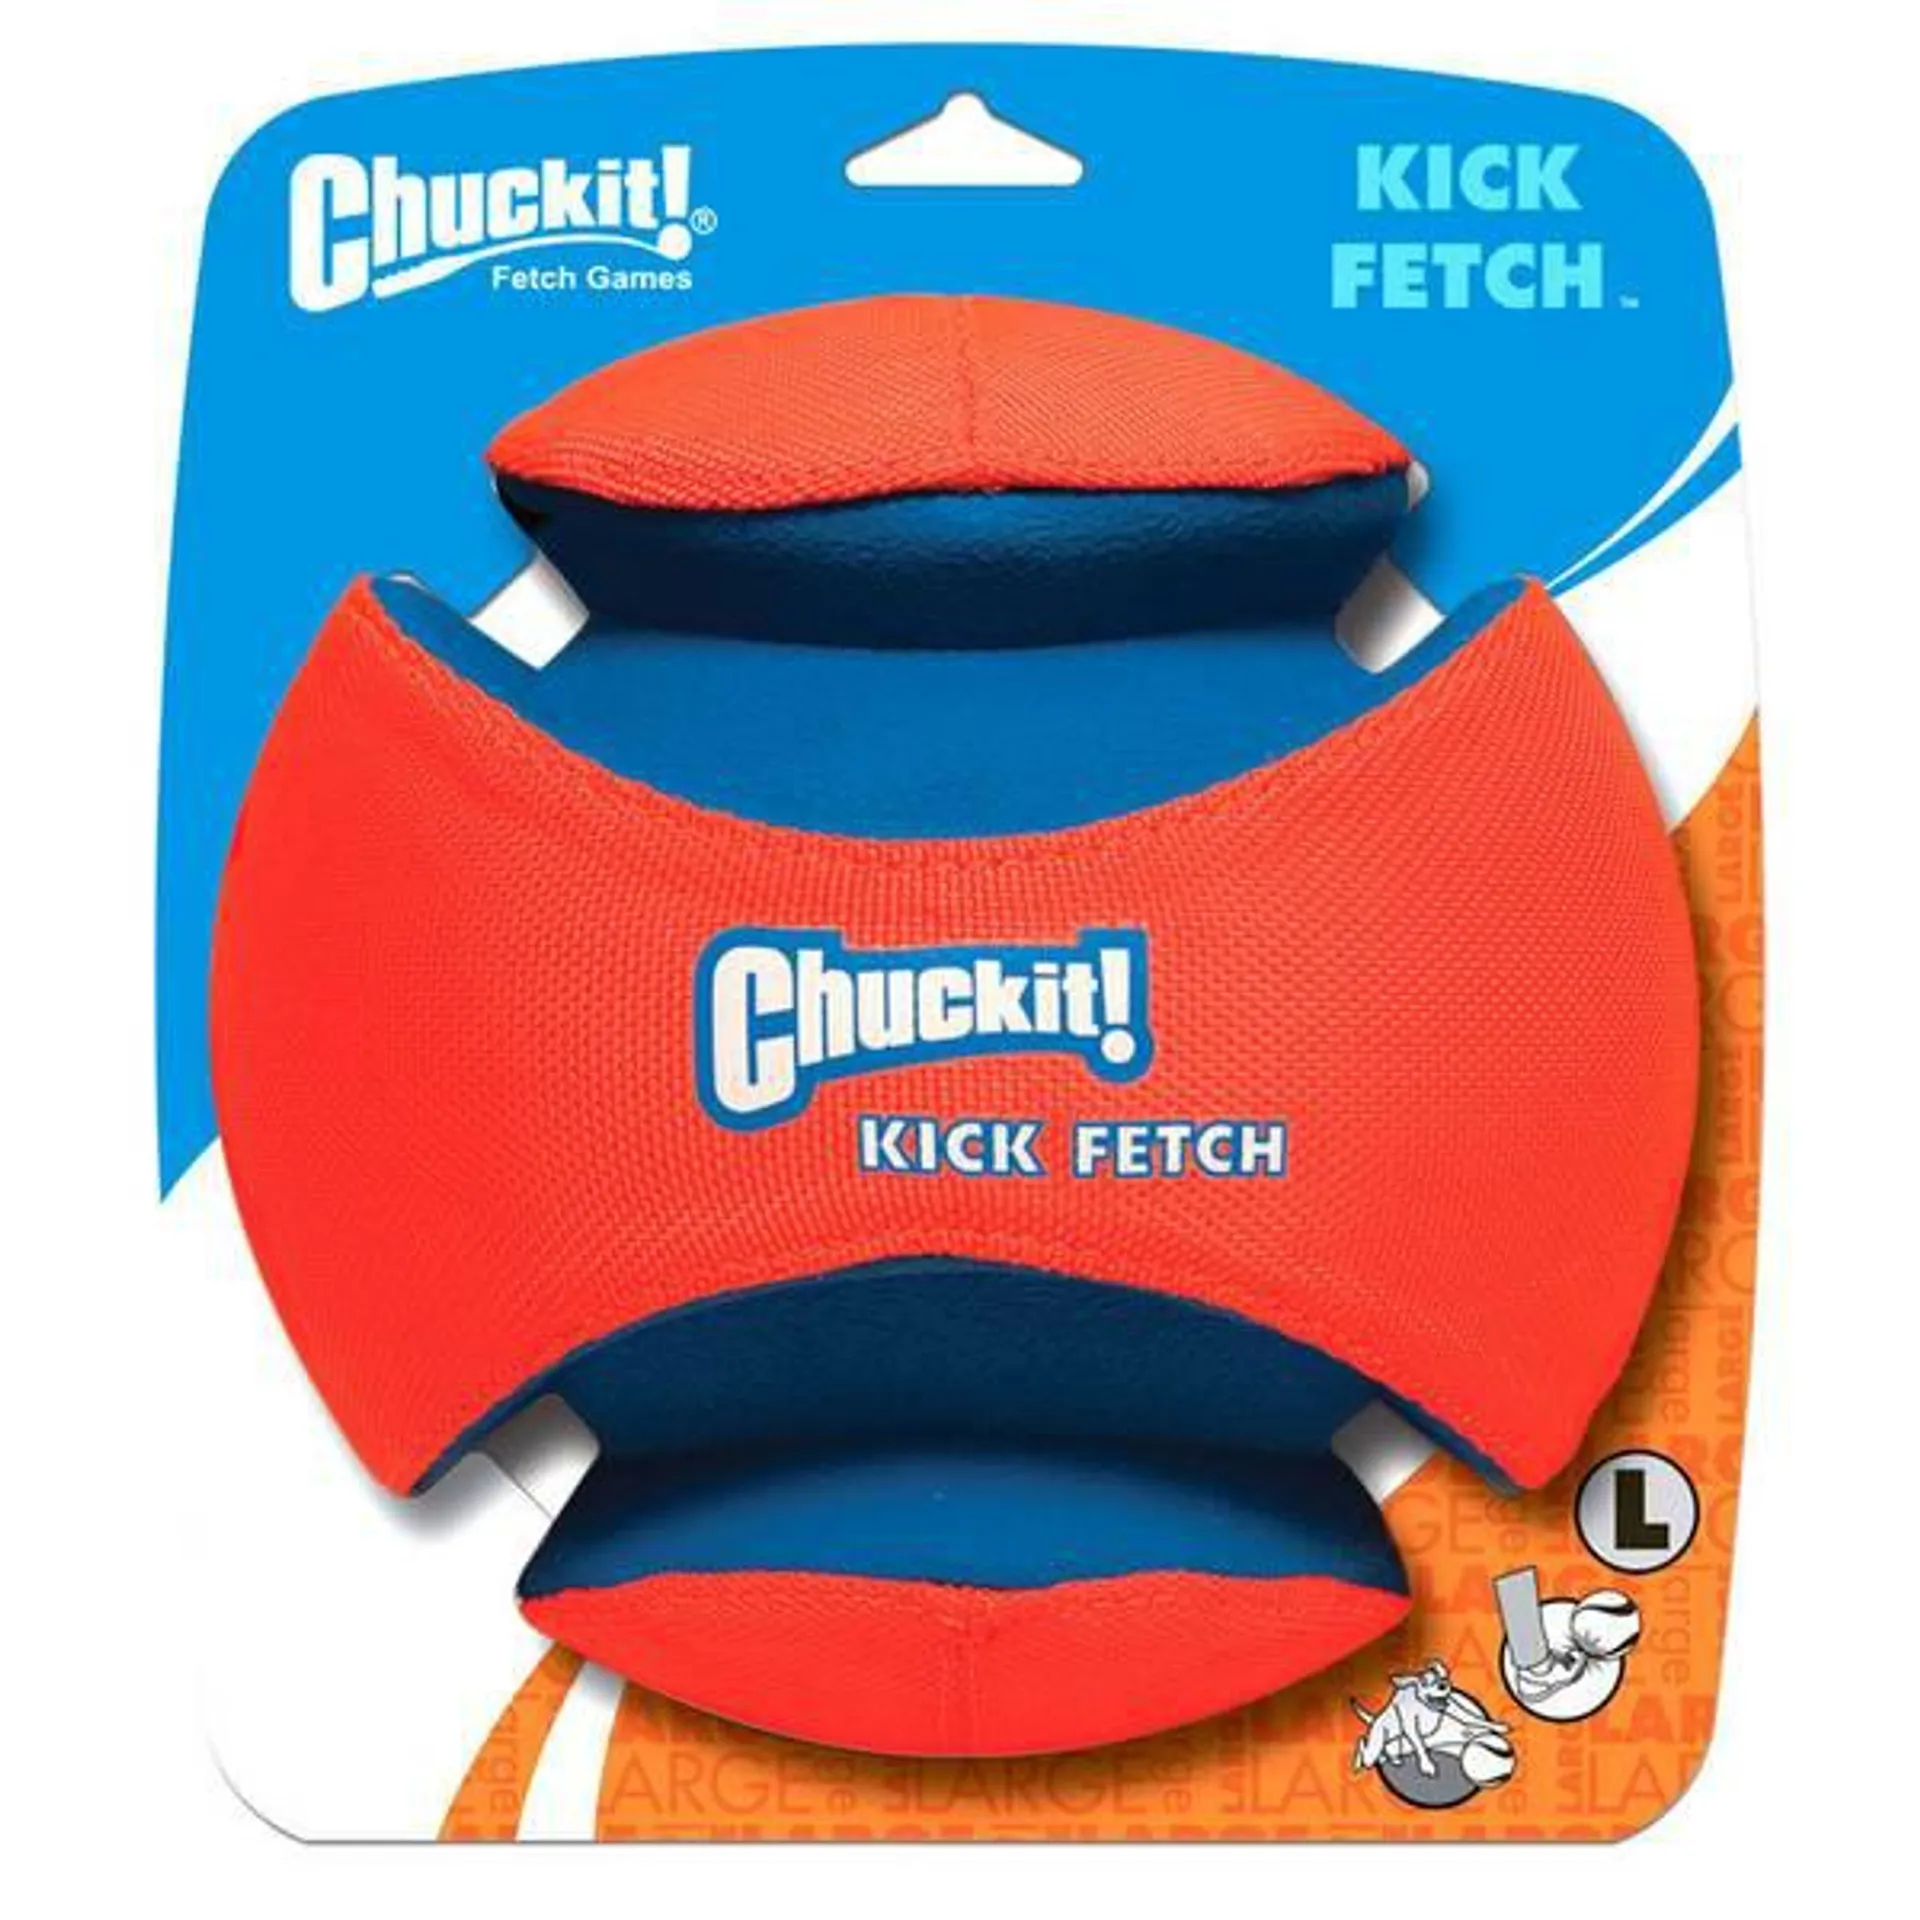 Large Kick Fetch Ball